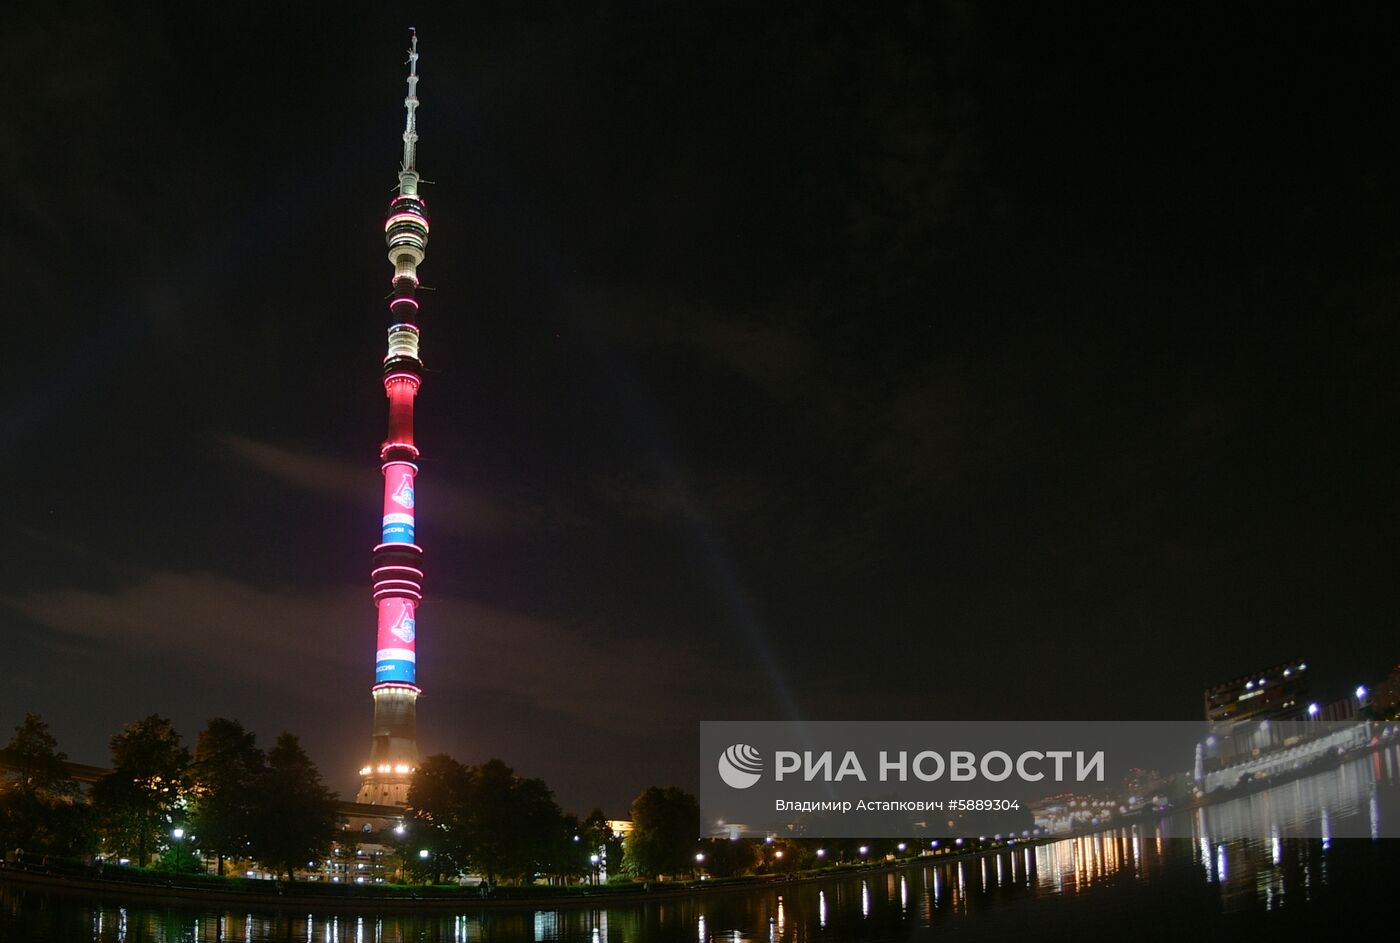 Останкинскую башню подсветили в честь победы ФК "Локомотив" в КР